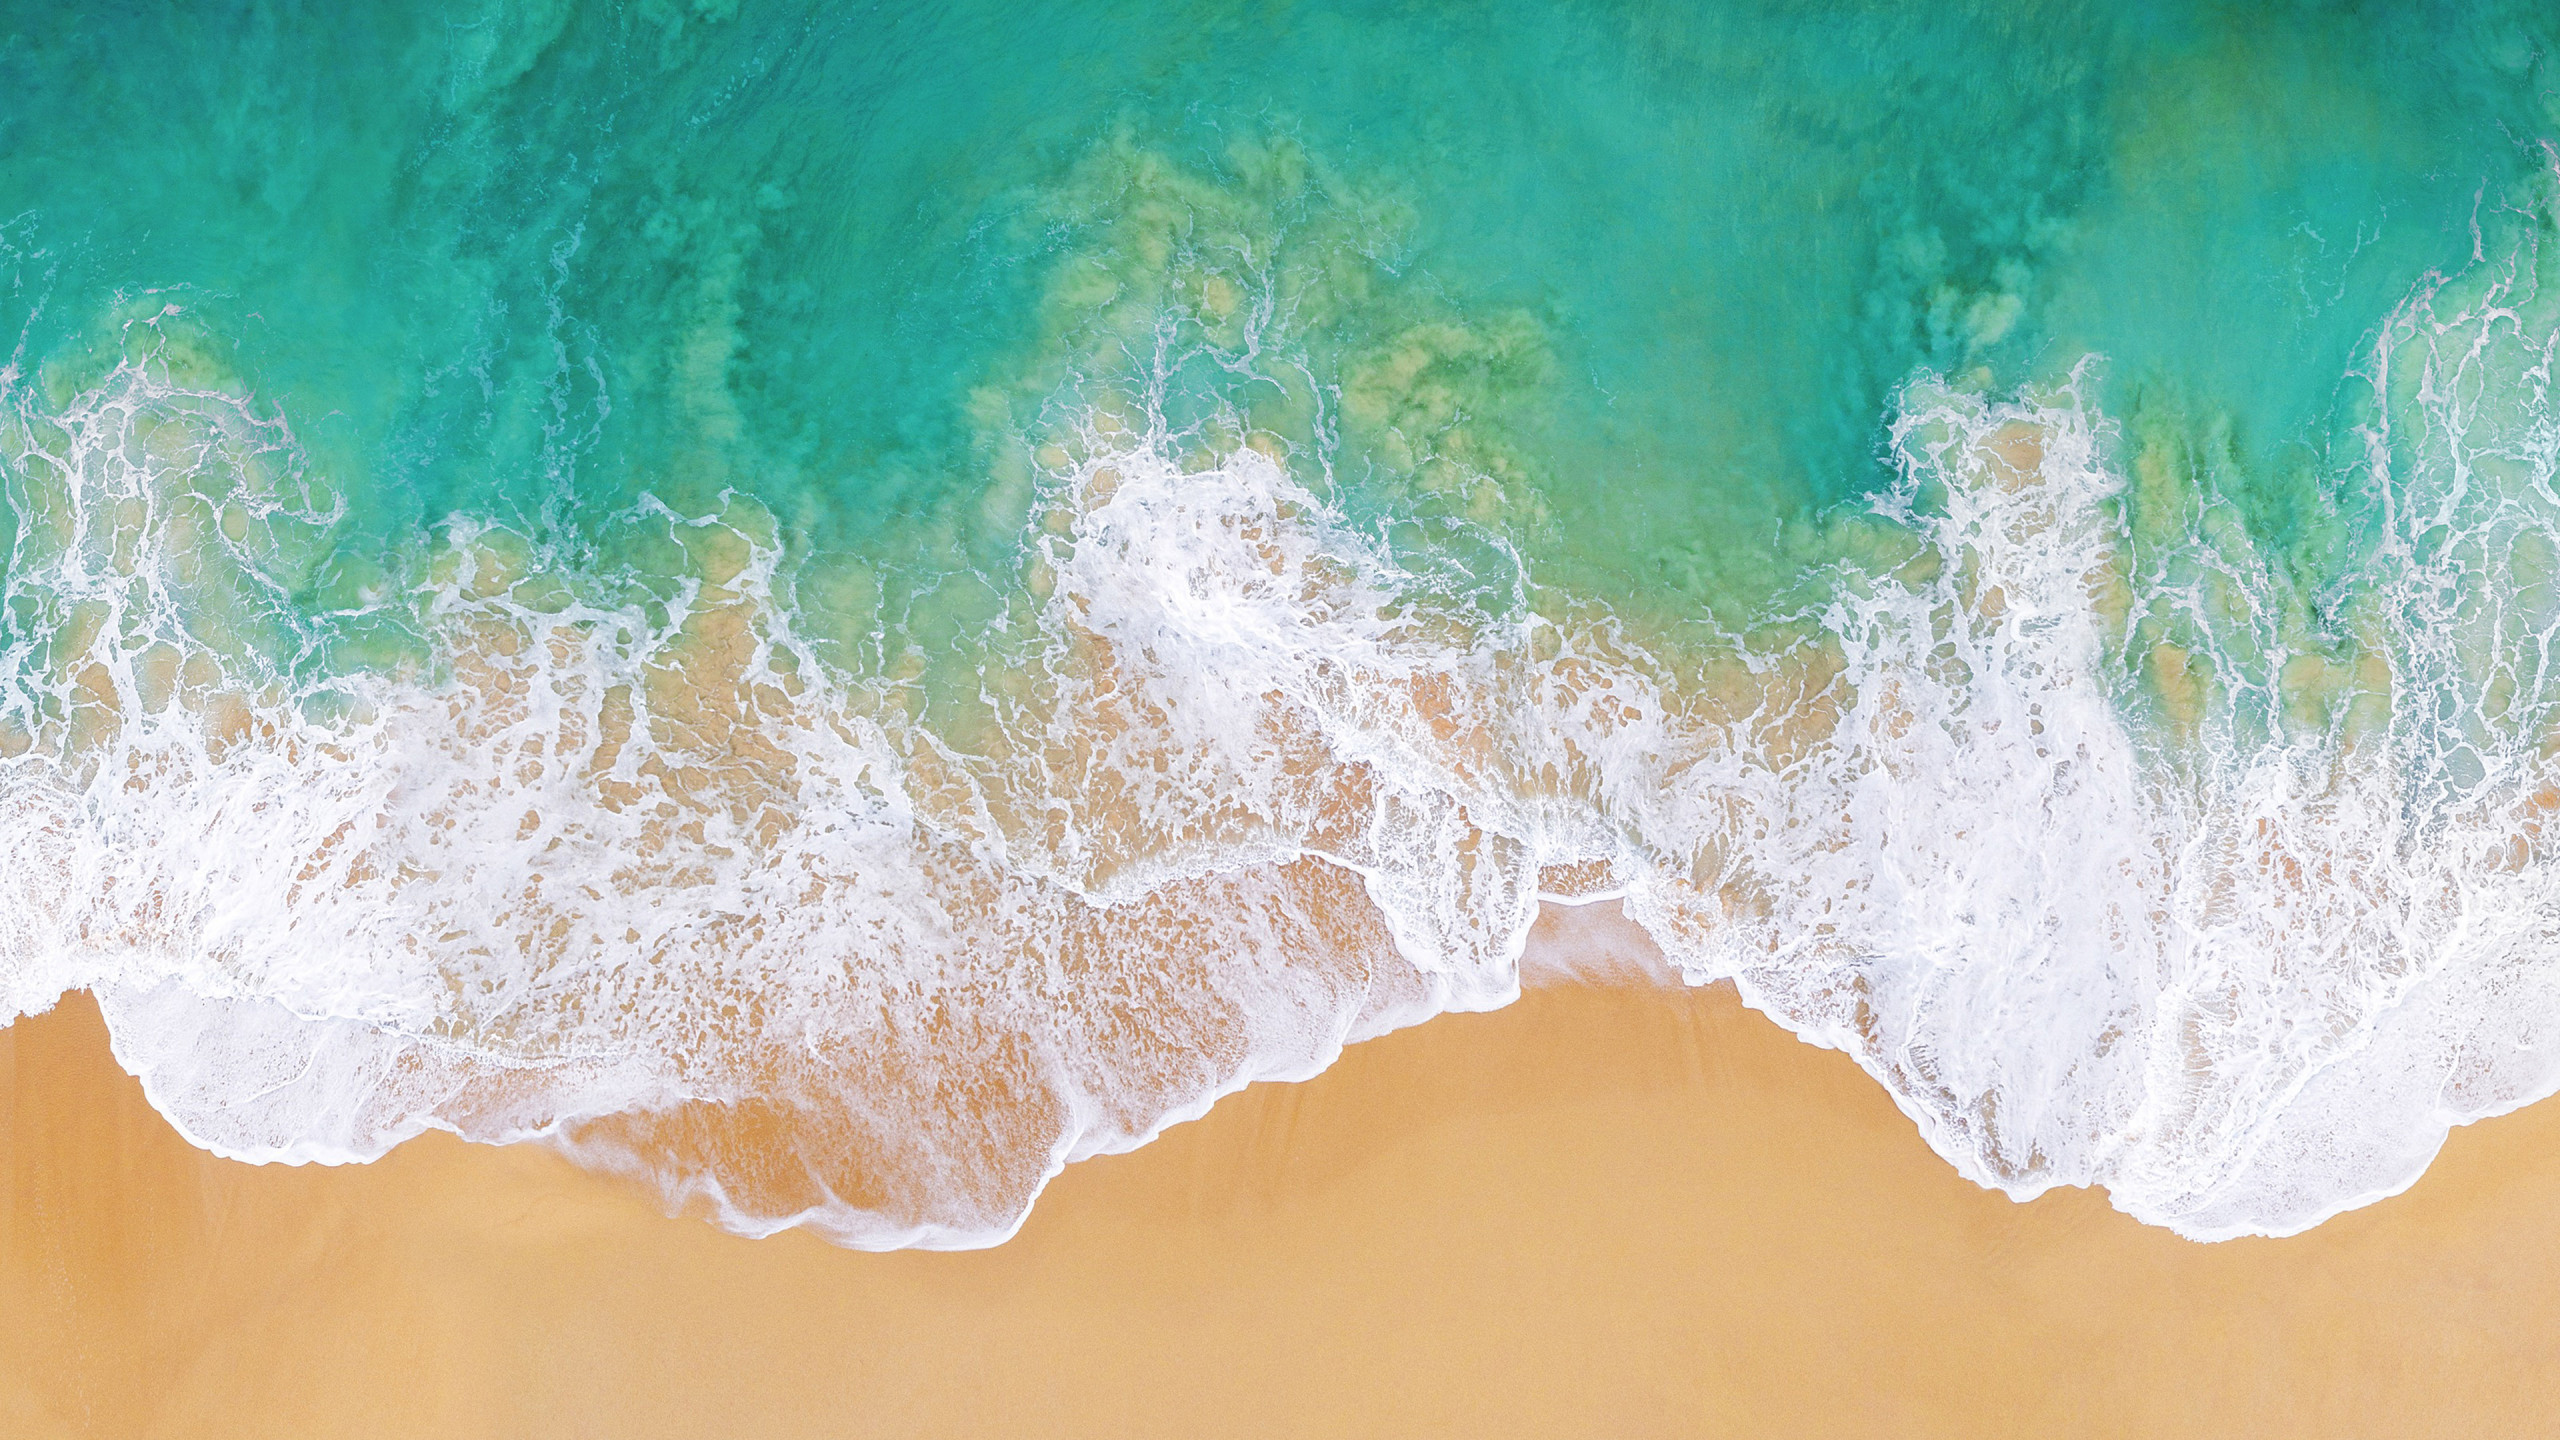 Hãy đưa bãi biển đại dương 4k iOS 11 wallpaper vào tầm nhìn của bạn và cảm nhận sự yên tĩnh của biển cả. Hình ảnh này sẽ làm cho bạn cảm thấy như người đang ở dưới đáy biển với những sinh vật biển đầy màu sắc và đủ loại.